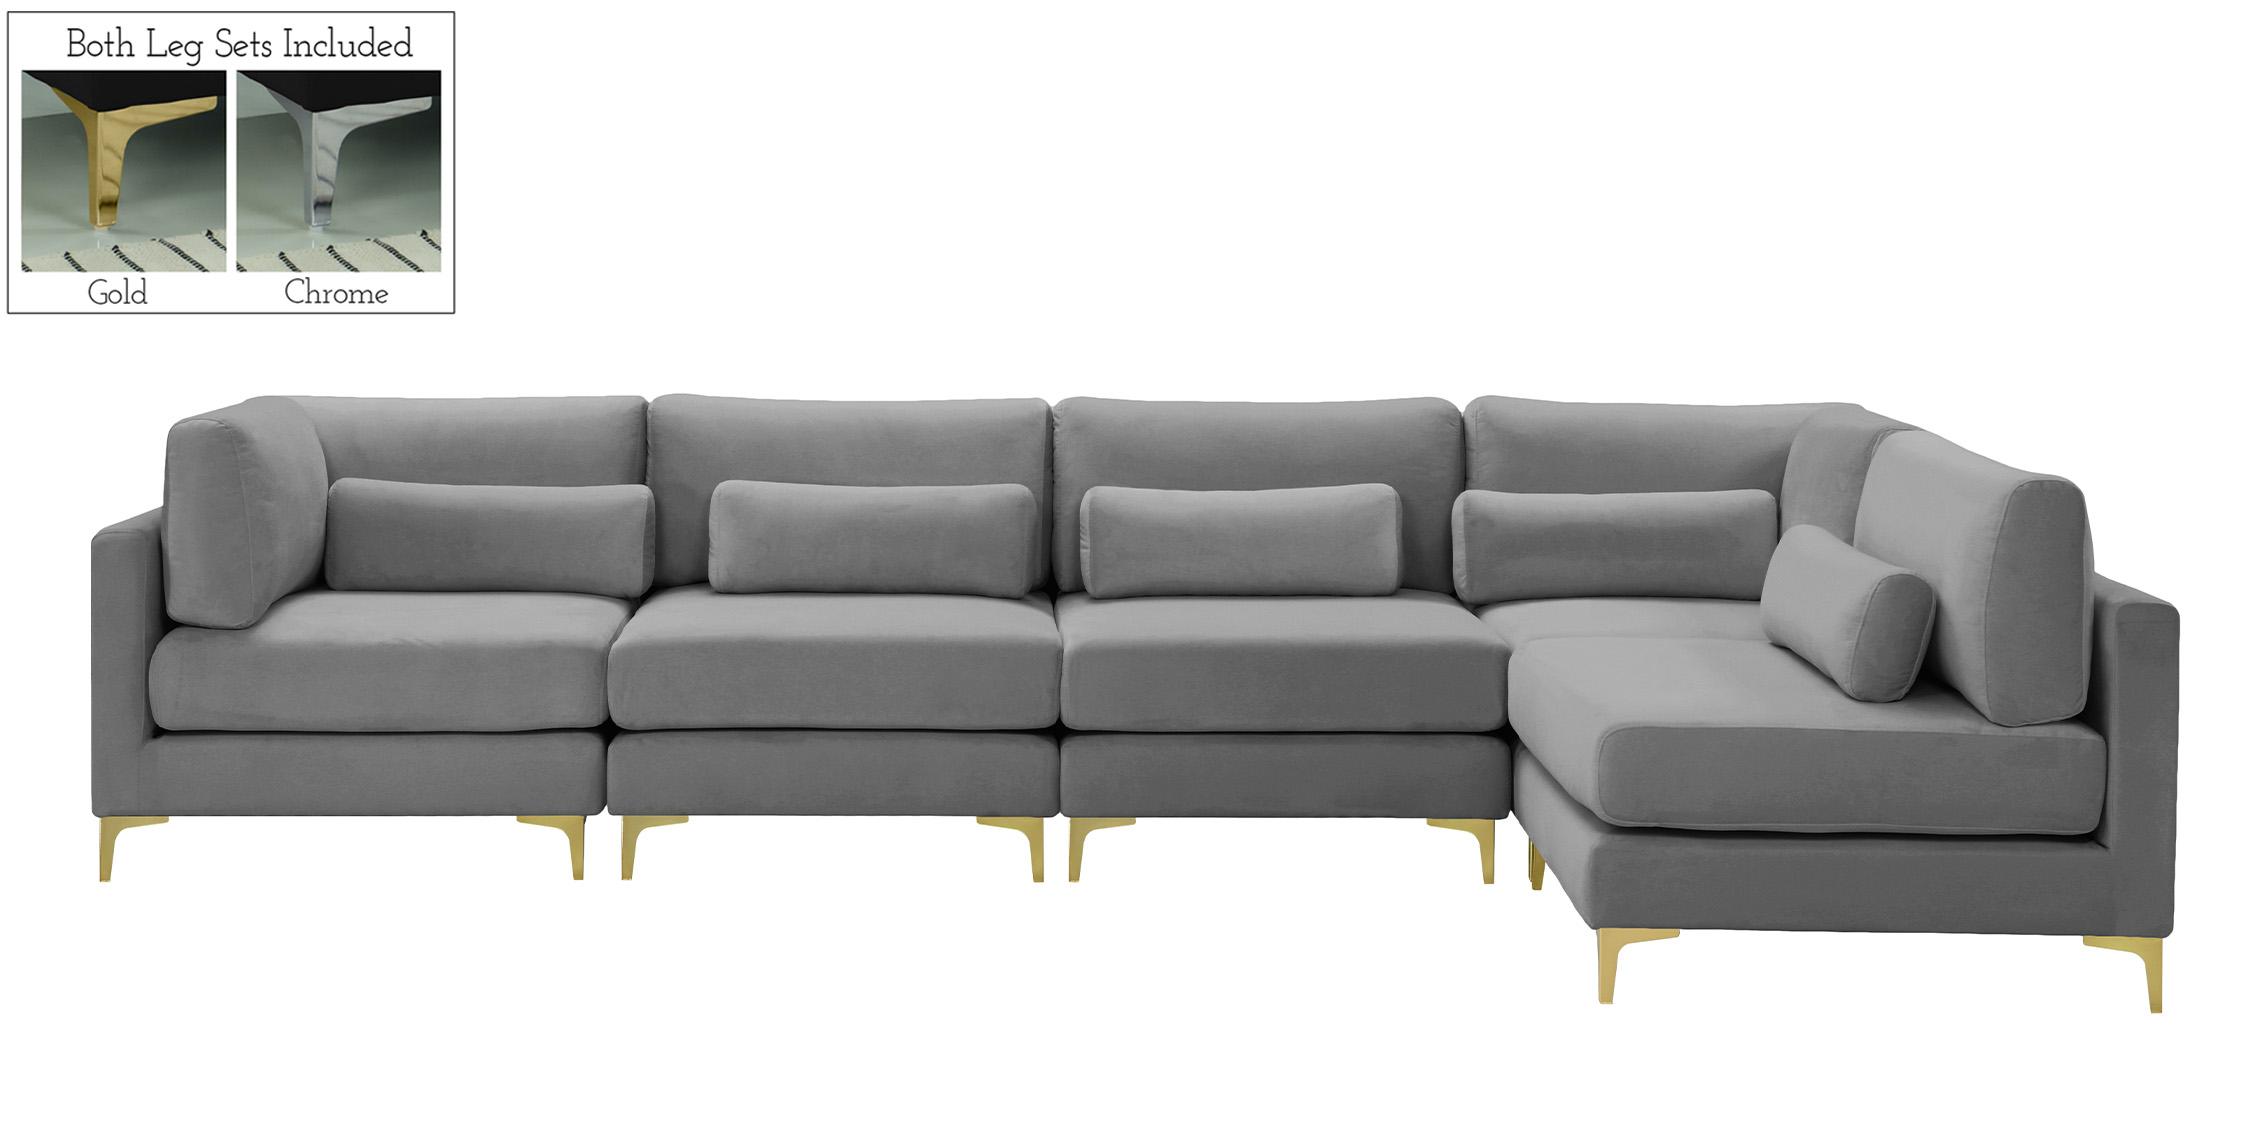 

    
605Grey-Sec5D Meridian Furniture Modular Sectional Sofa
